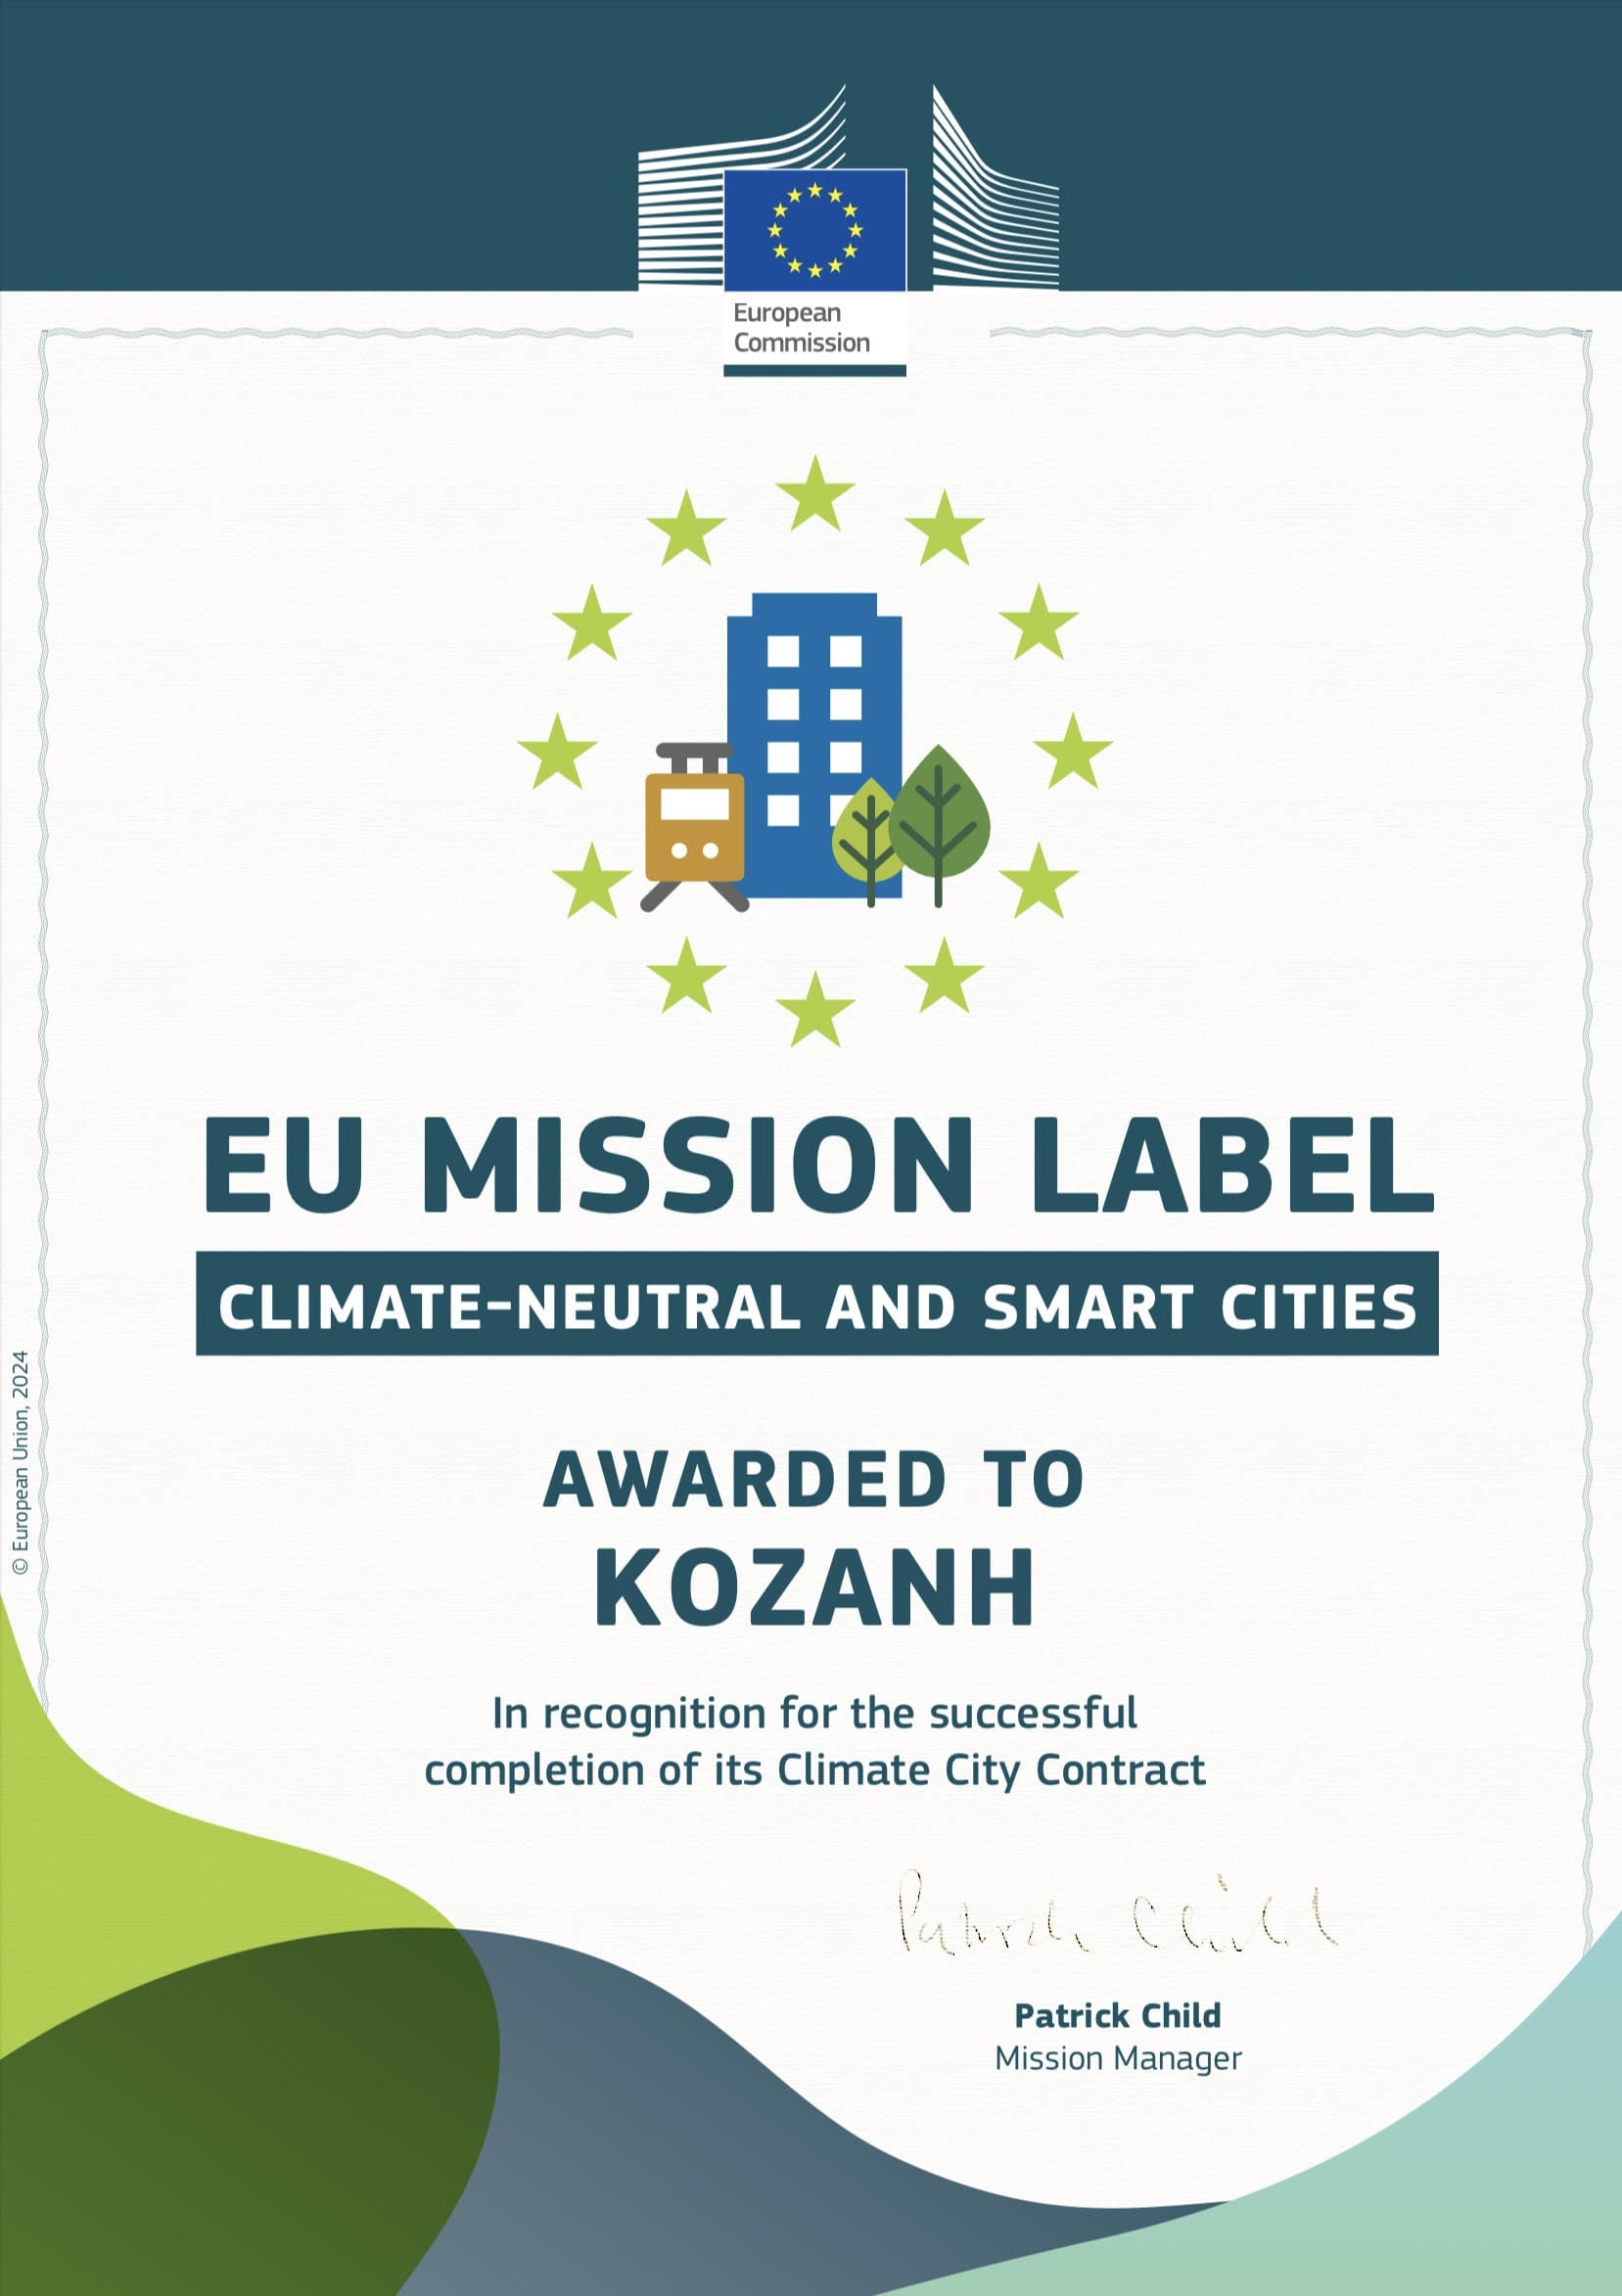 «Ενότητα» - Εγκρίθηκε το CCC (Climate City Contract) και η Κοζάνη λαμβάνει το label  της Αποστολής των 100 κλιματικά ουδέτερων και έξυπνων πόλεων έως το 2030.